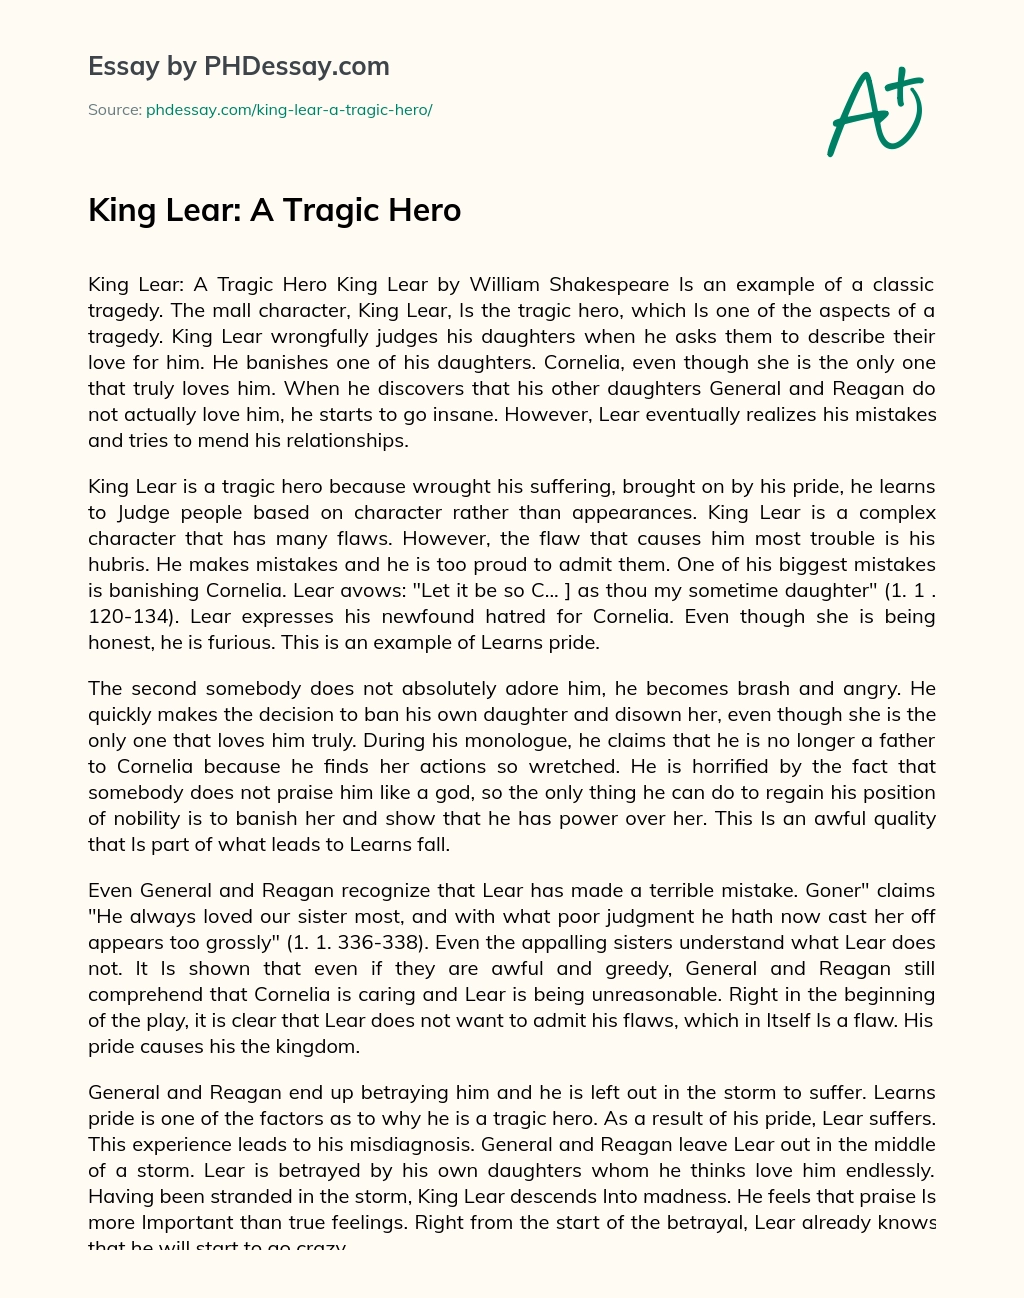 King Lear: A Tragic Hero essay